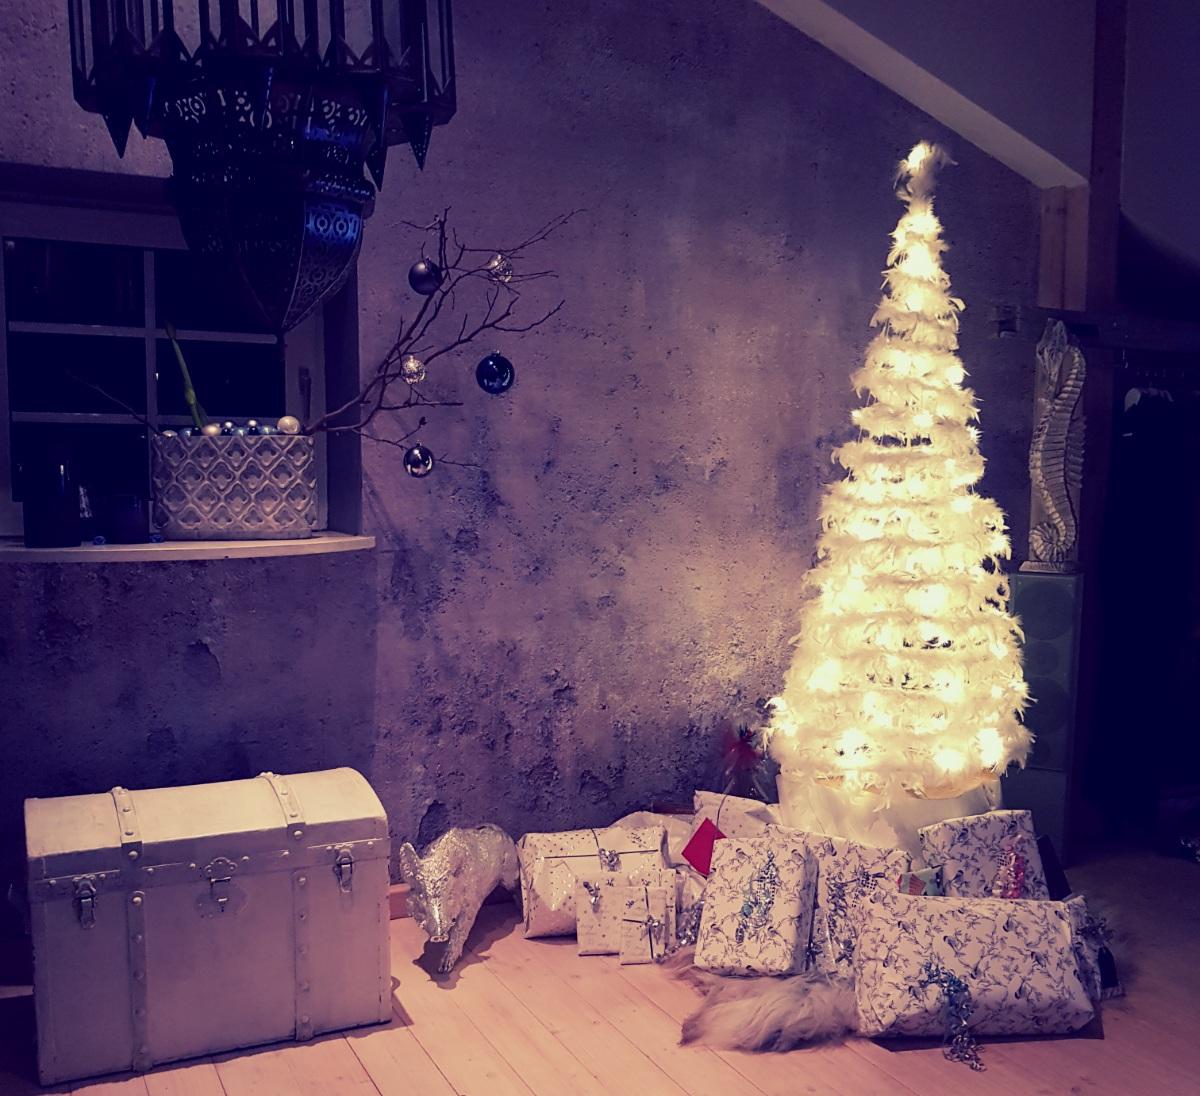 Ihr Kinderlein kommet / #Weihnachtsbaum #christmastree #shabbytapete #geschenke